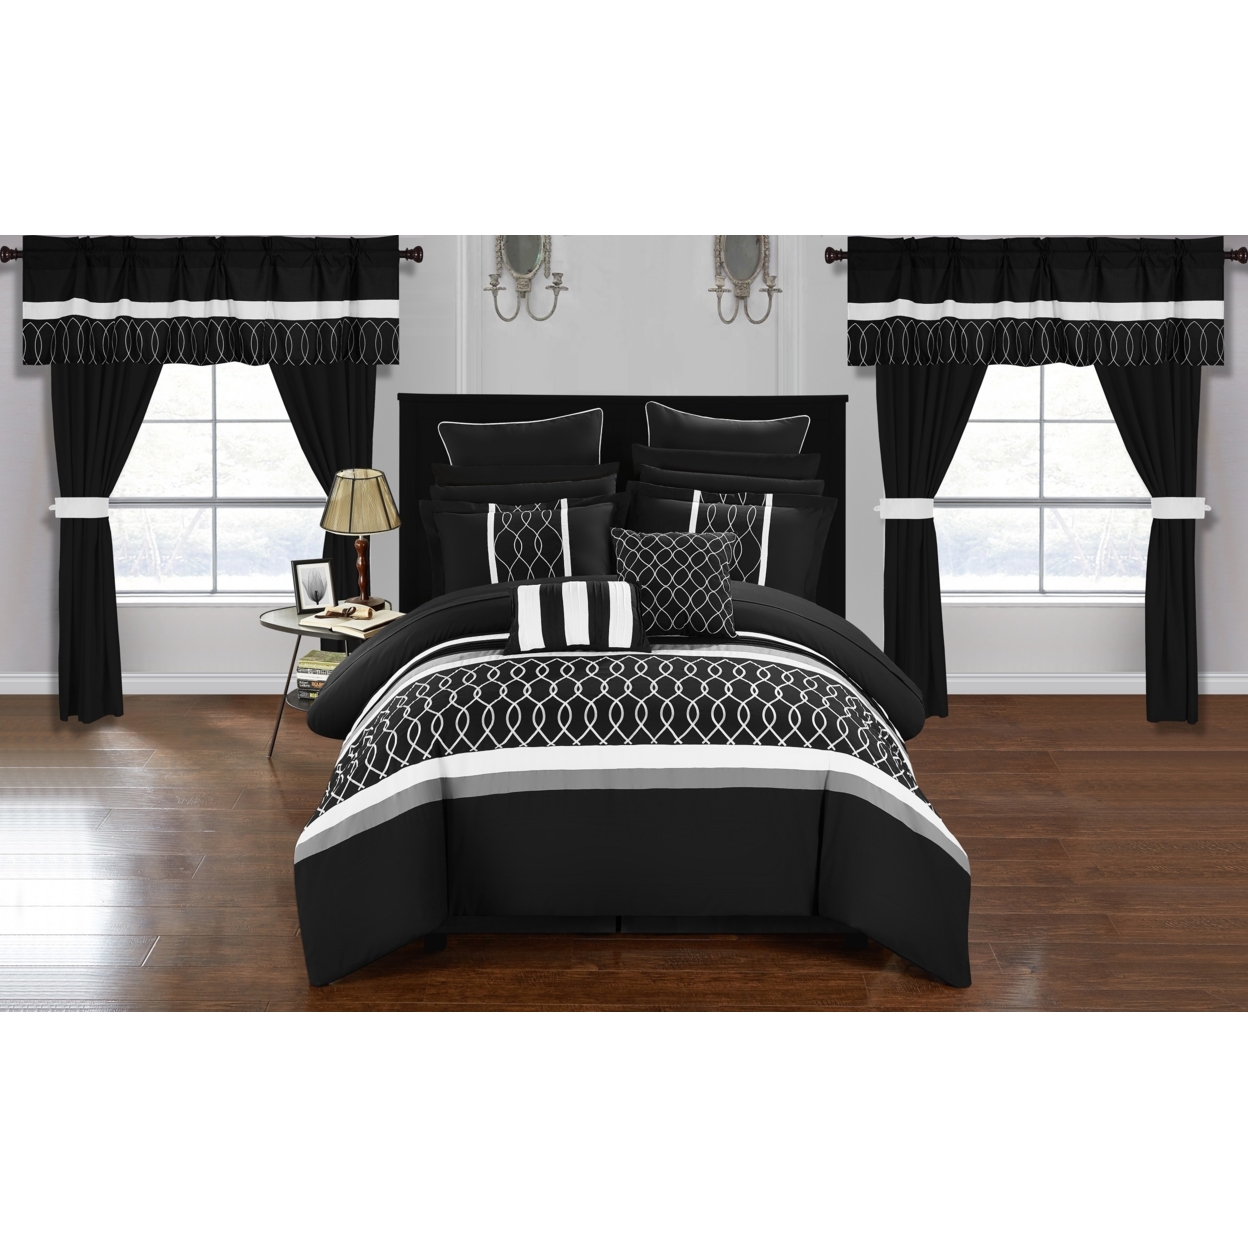 Topaz 24 Piece Comforter Bed In A Bag Pleated Ruffled Designer Embellished Bedding Set - Black, King